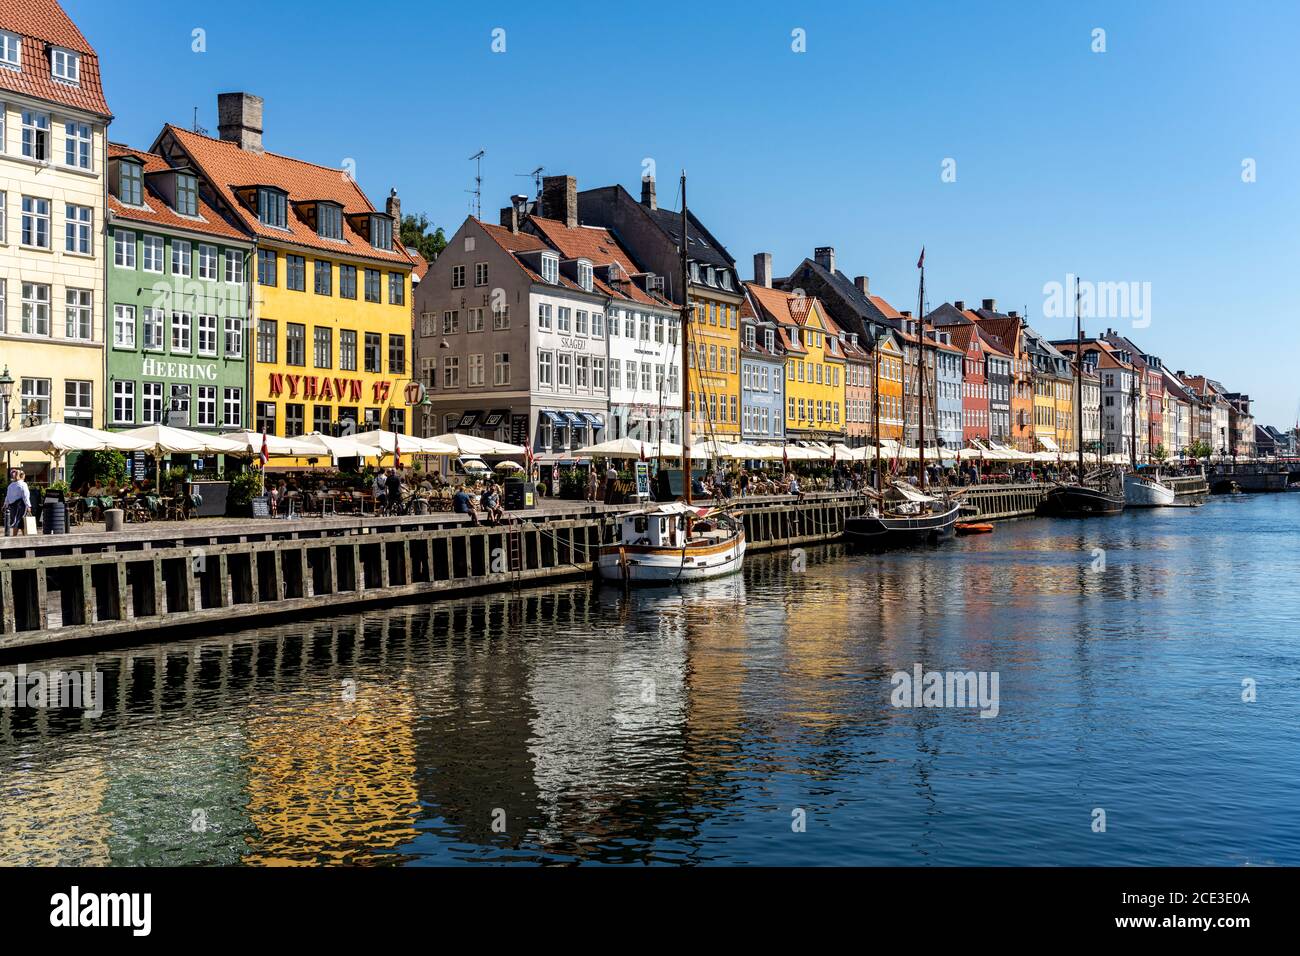 Bunte Häuser, Restaurants und historische Schiffe am Kanal und Hafen Nyhavn, Kopenhagen, Dänemark, Europa | Colourful facades, Restaurants and old shi Stock Photo